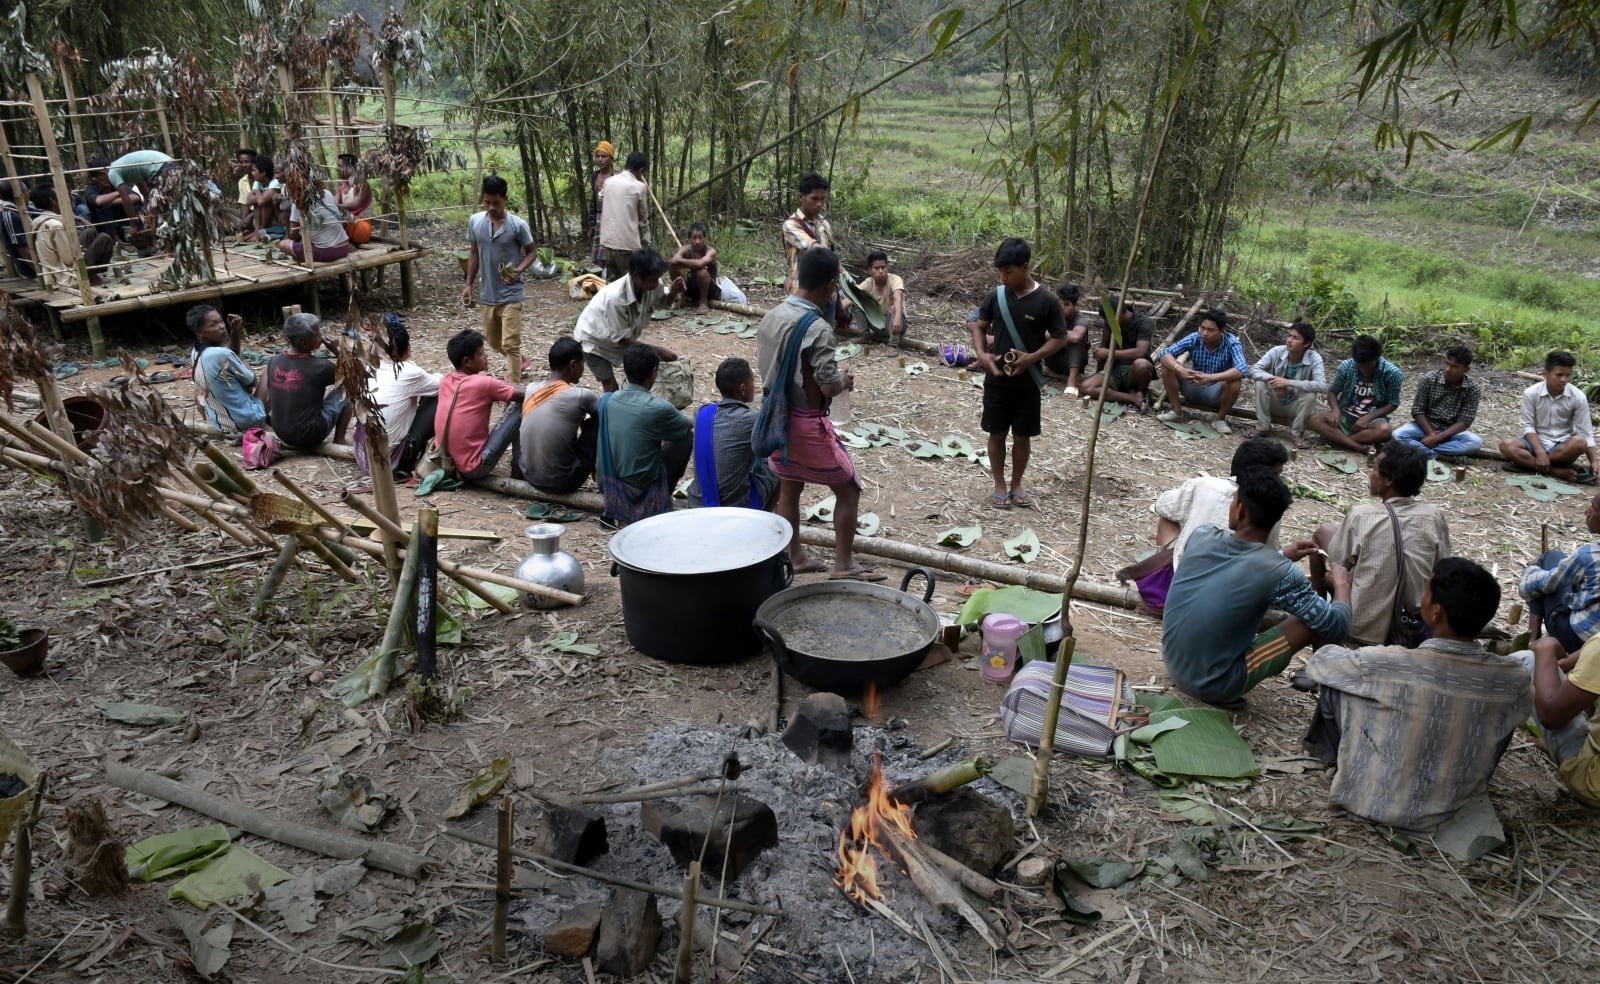 Uczta po odprawieniu rytuałów z okazji festiwalu Jongkhong w dystrykcie Karbi Anglong w stanie Assam w Indiach. Tiwowie żyjący na wzgórzach rozpoczynają swój sezon rolniczy, czcząc ich wzgórza i las, który jest głównym rytuałem festiwalu, fot. EPA/STR 
